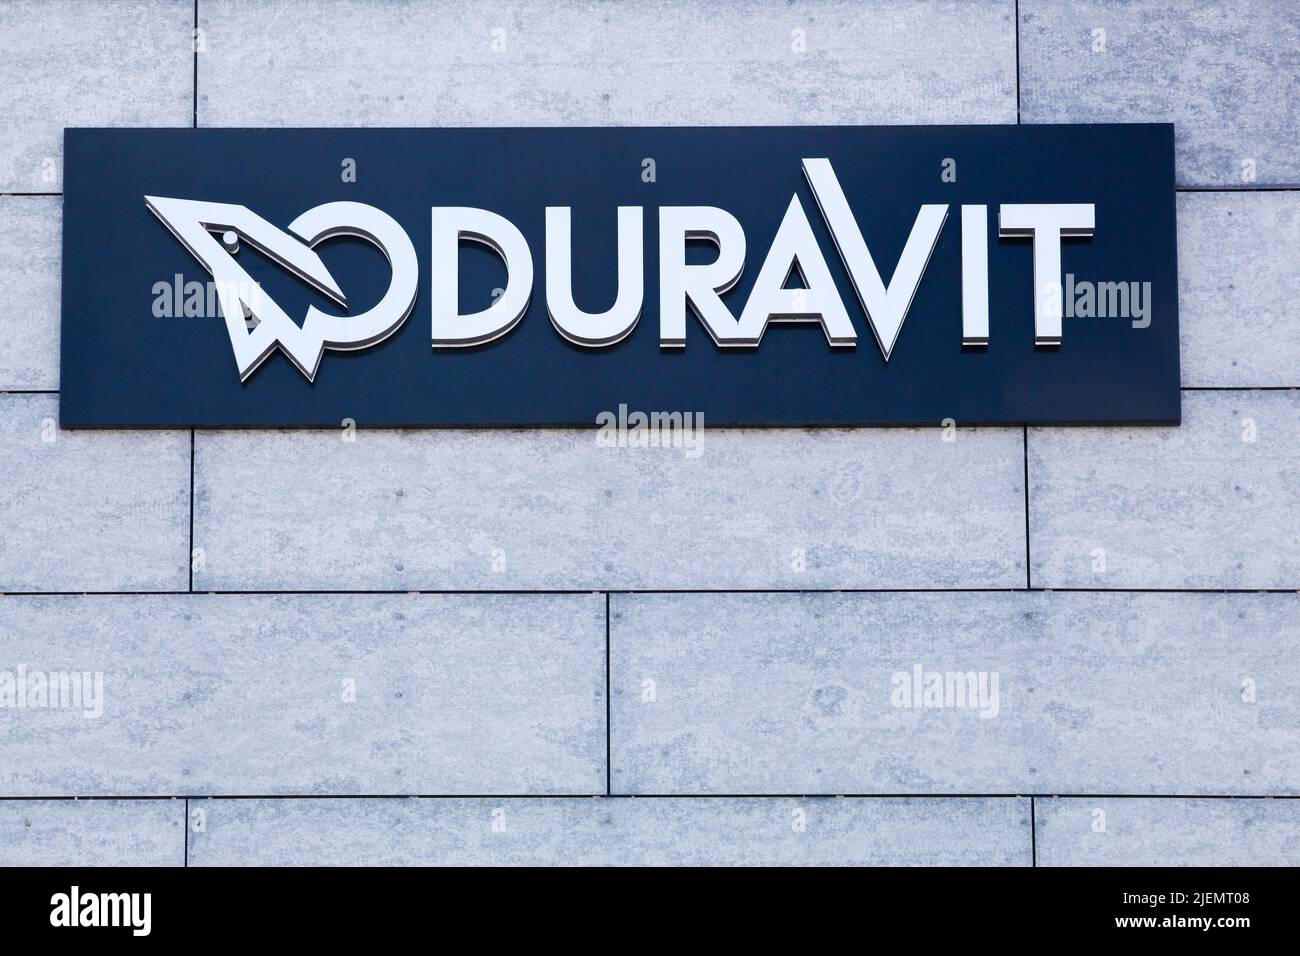 Aarhus, Danemark - 16 avril 2022 : logo Duravet sur un mur. Duravit AG, fondée en 1817, est principalement fabricant d'accessoires de salle de bain en porcelaine Banque D'Images